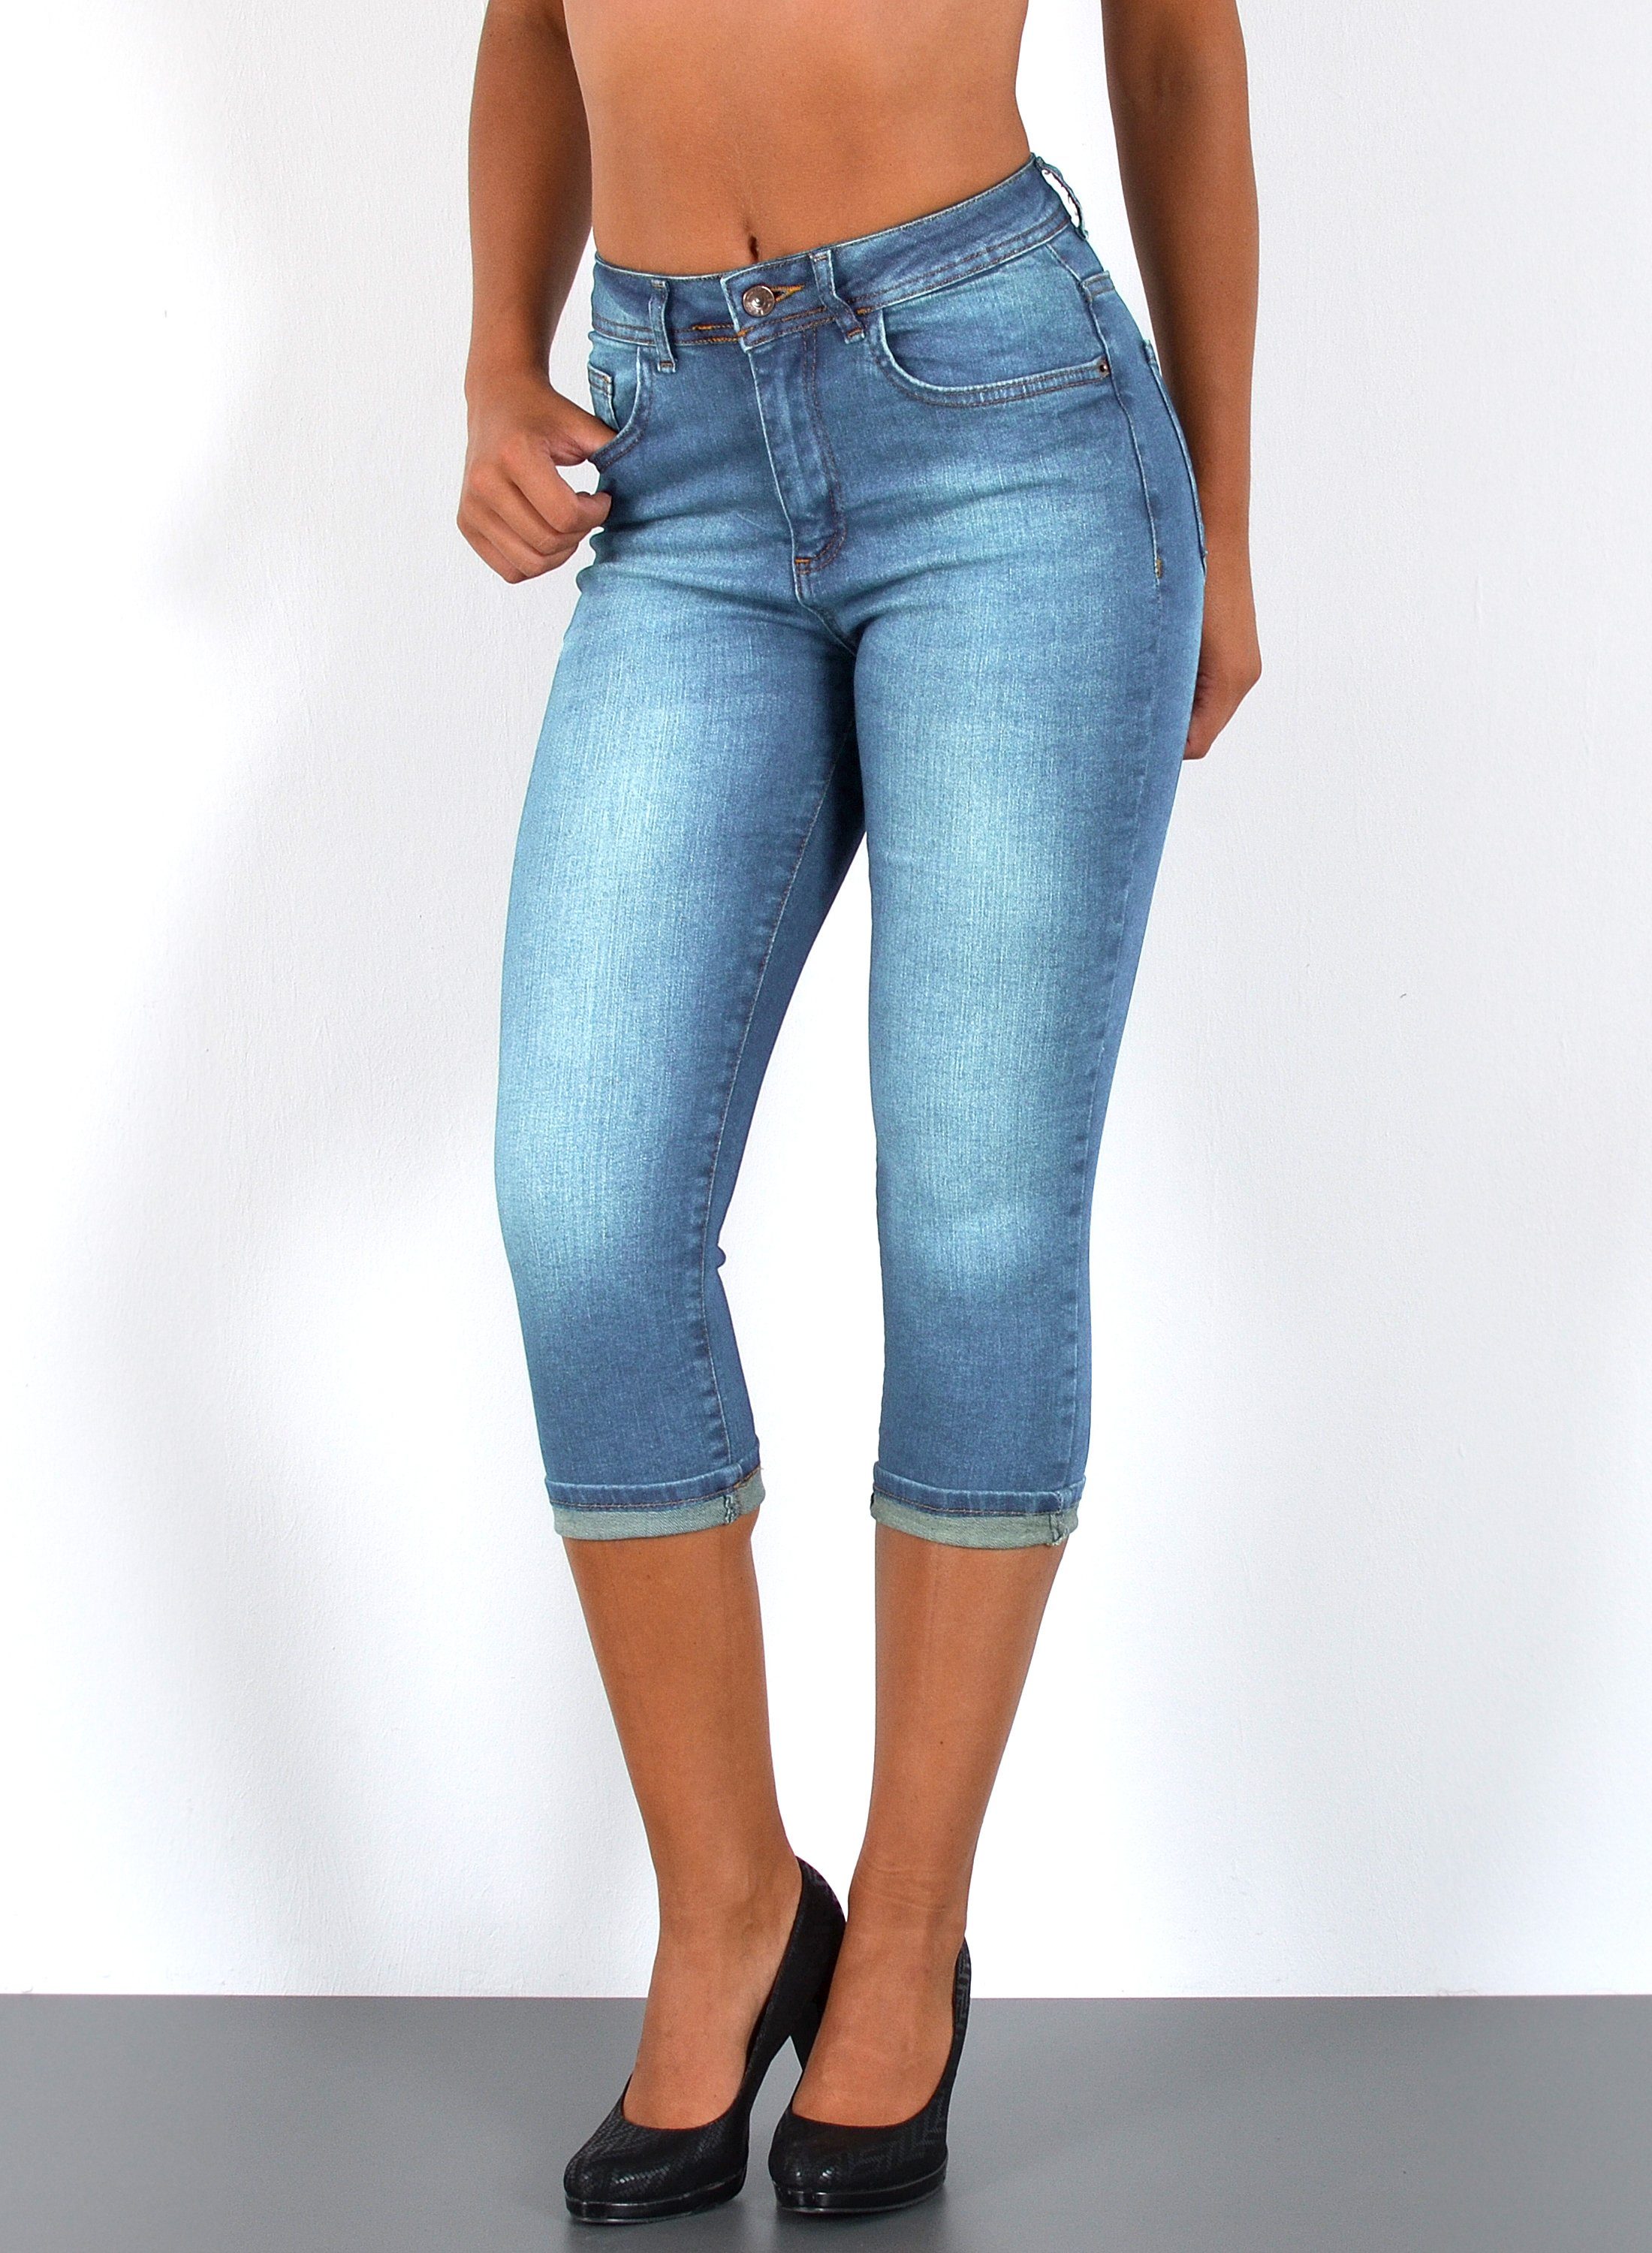 Blaue Damen kurze Hosen online kaufen | OTTO